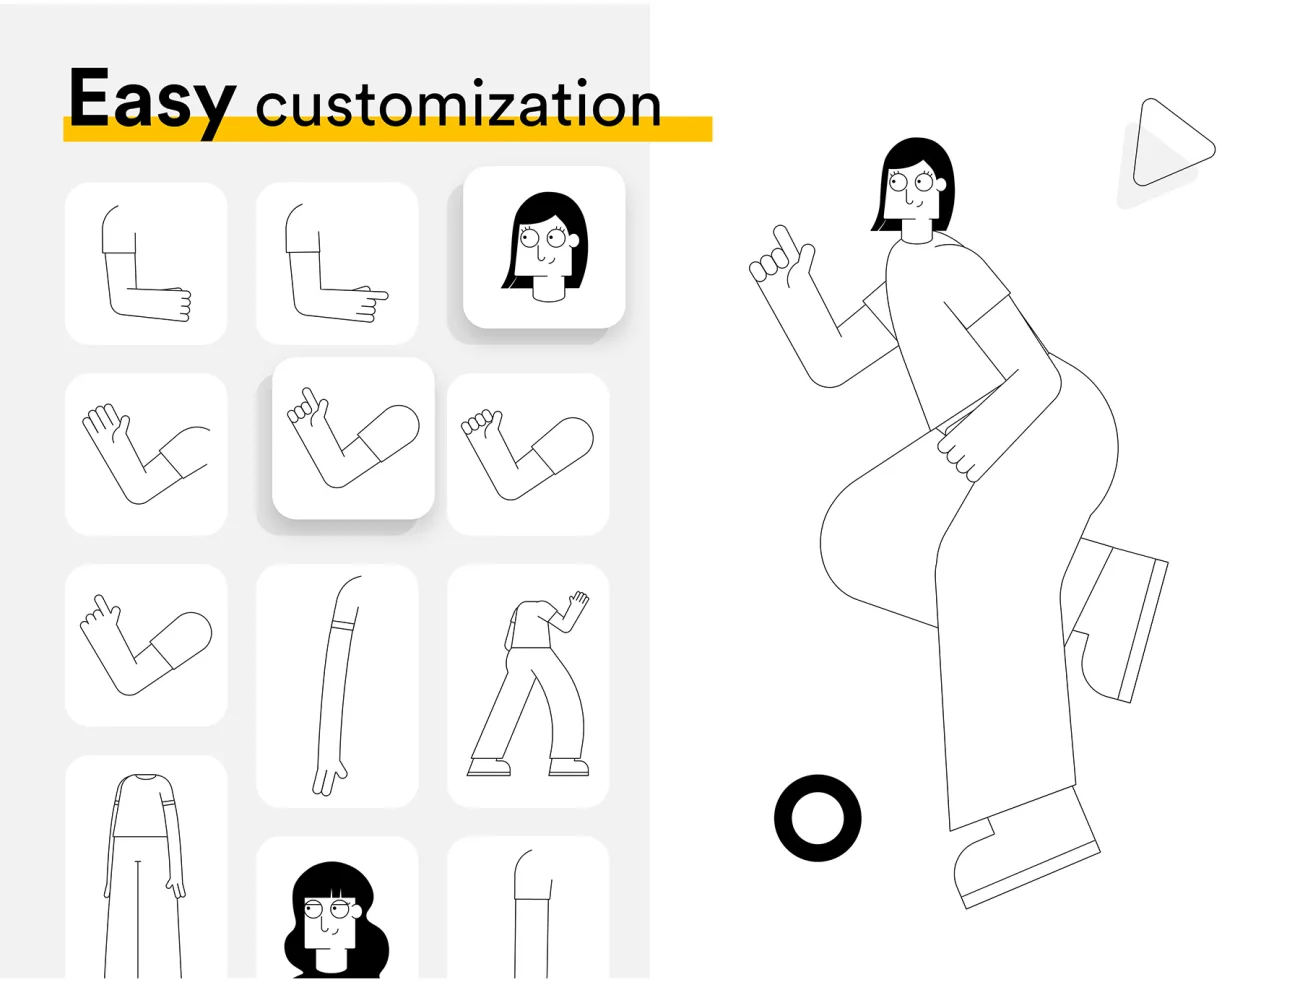 Playful Line Illustration Pack 16个预建场景矢量俏皮线条插画包-人物插画、场景插画、学习生活、插画、插画功能、插画风格、概念创意、线条手绘、职场办公、趣味漫画-到位啦UI